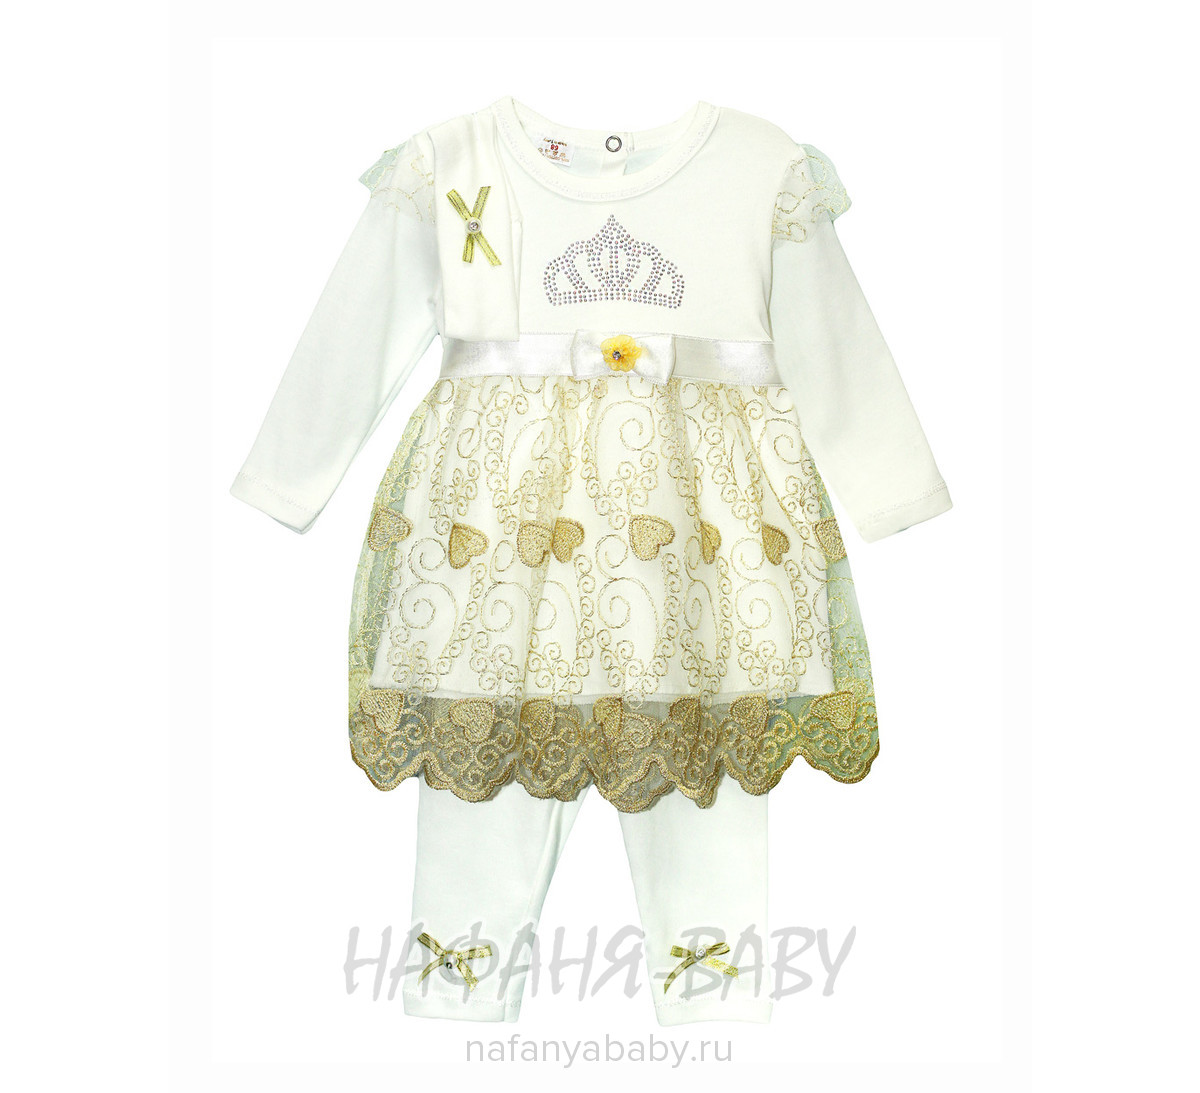 Детский костюм для новорожденных FINDIK арт: 61031, 0-12 мес, цвет кремовый с золотистой вышивкой, оптом Турция